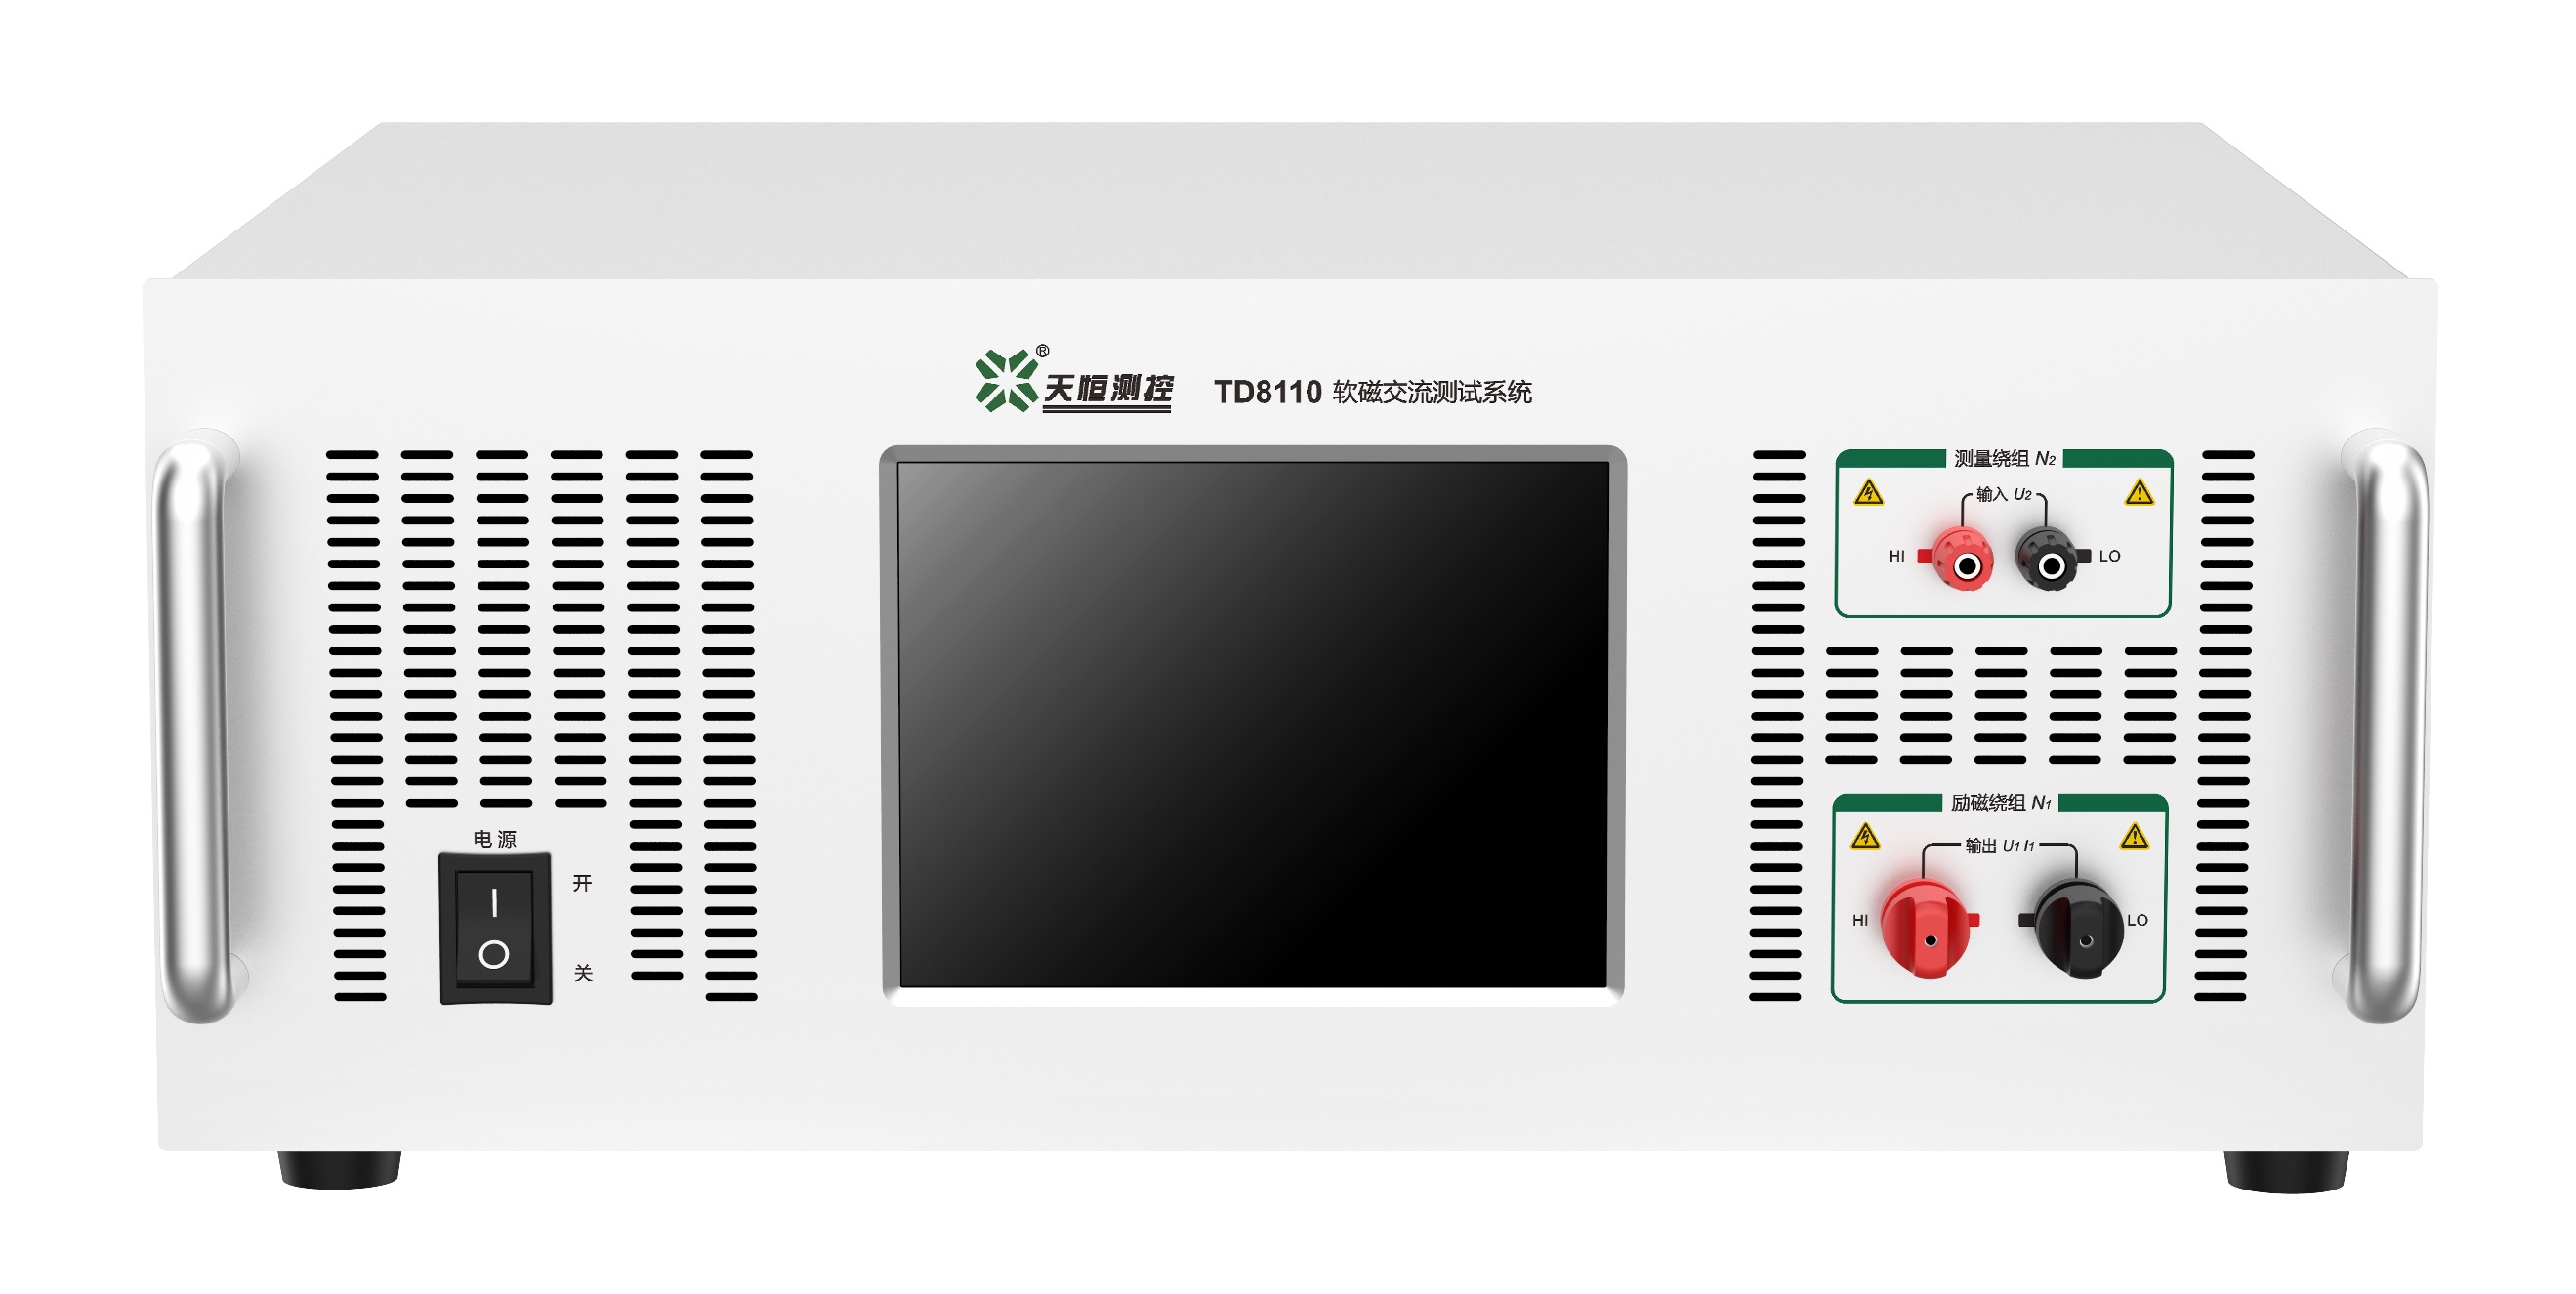 연자성 재료용 TD81 시리즈 AC 자기 특성 측정 시스템